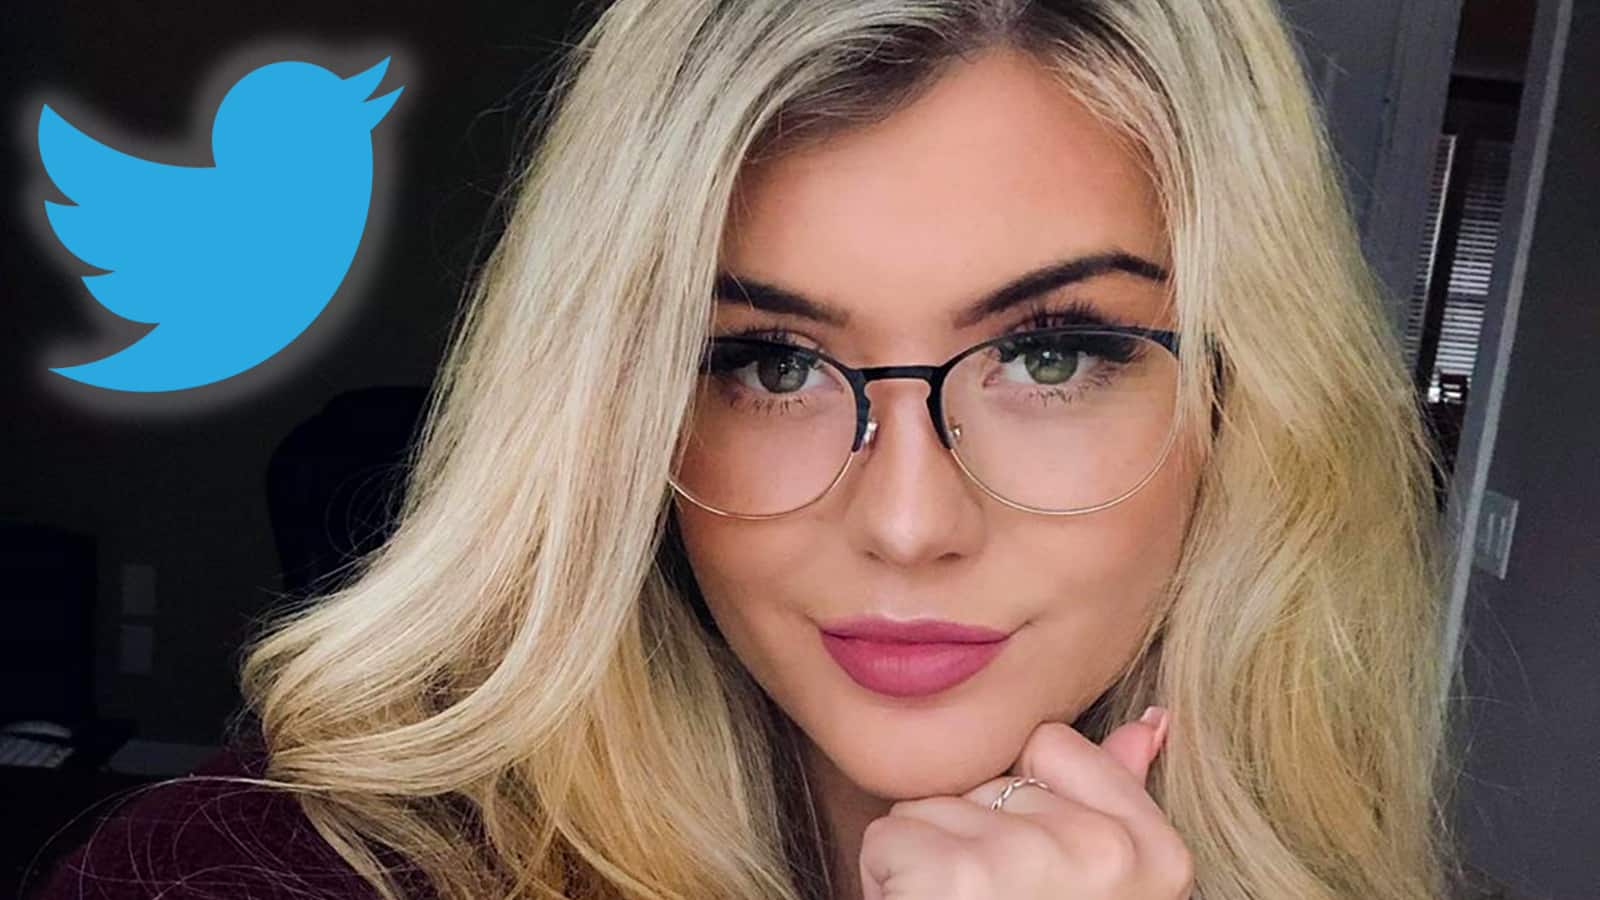 BrookeAB pleads Twitter stalker